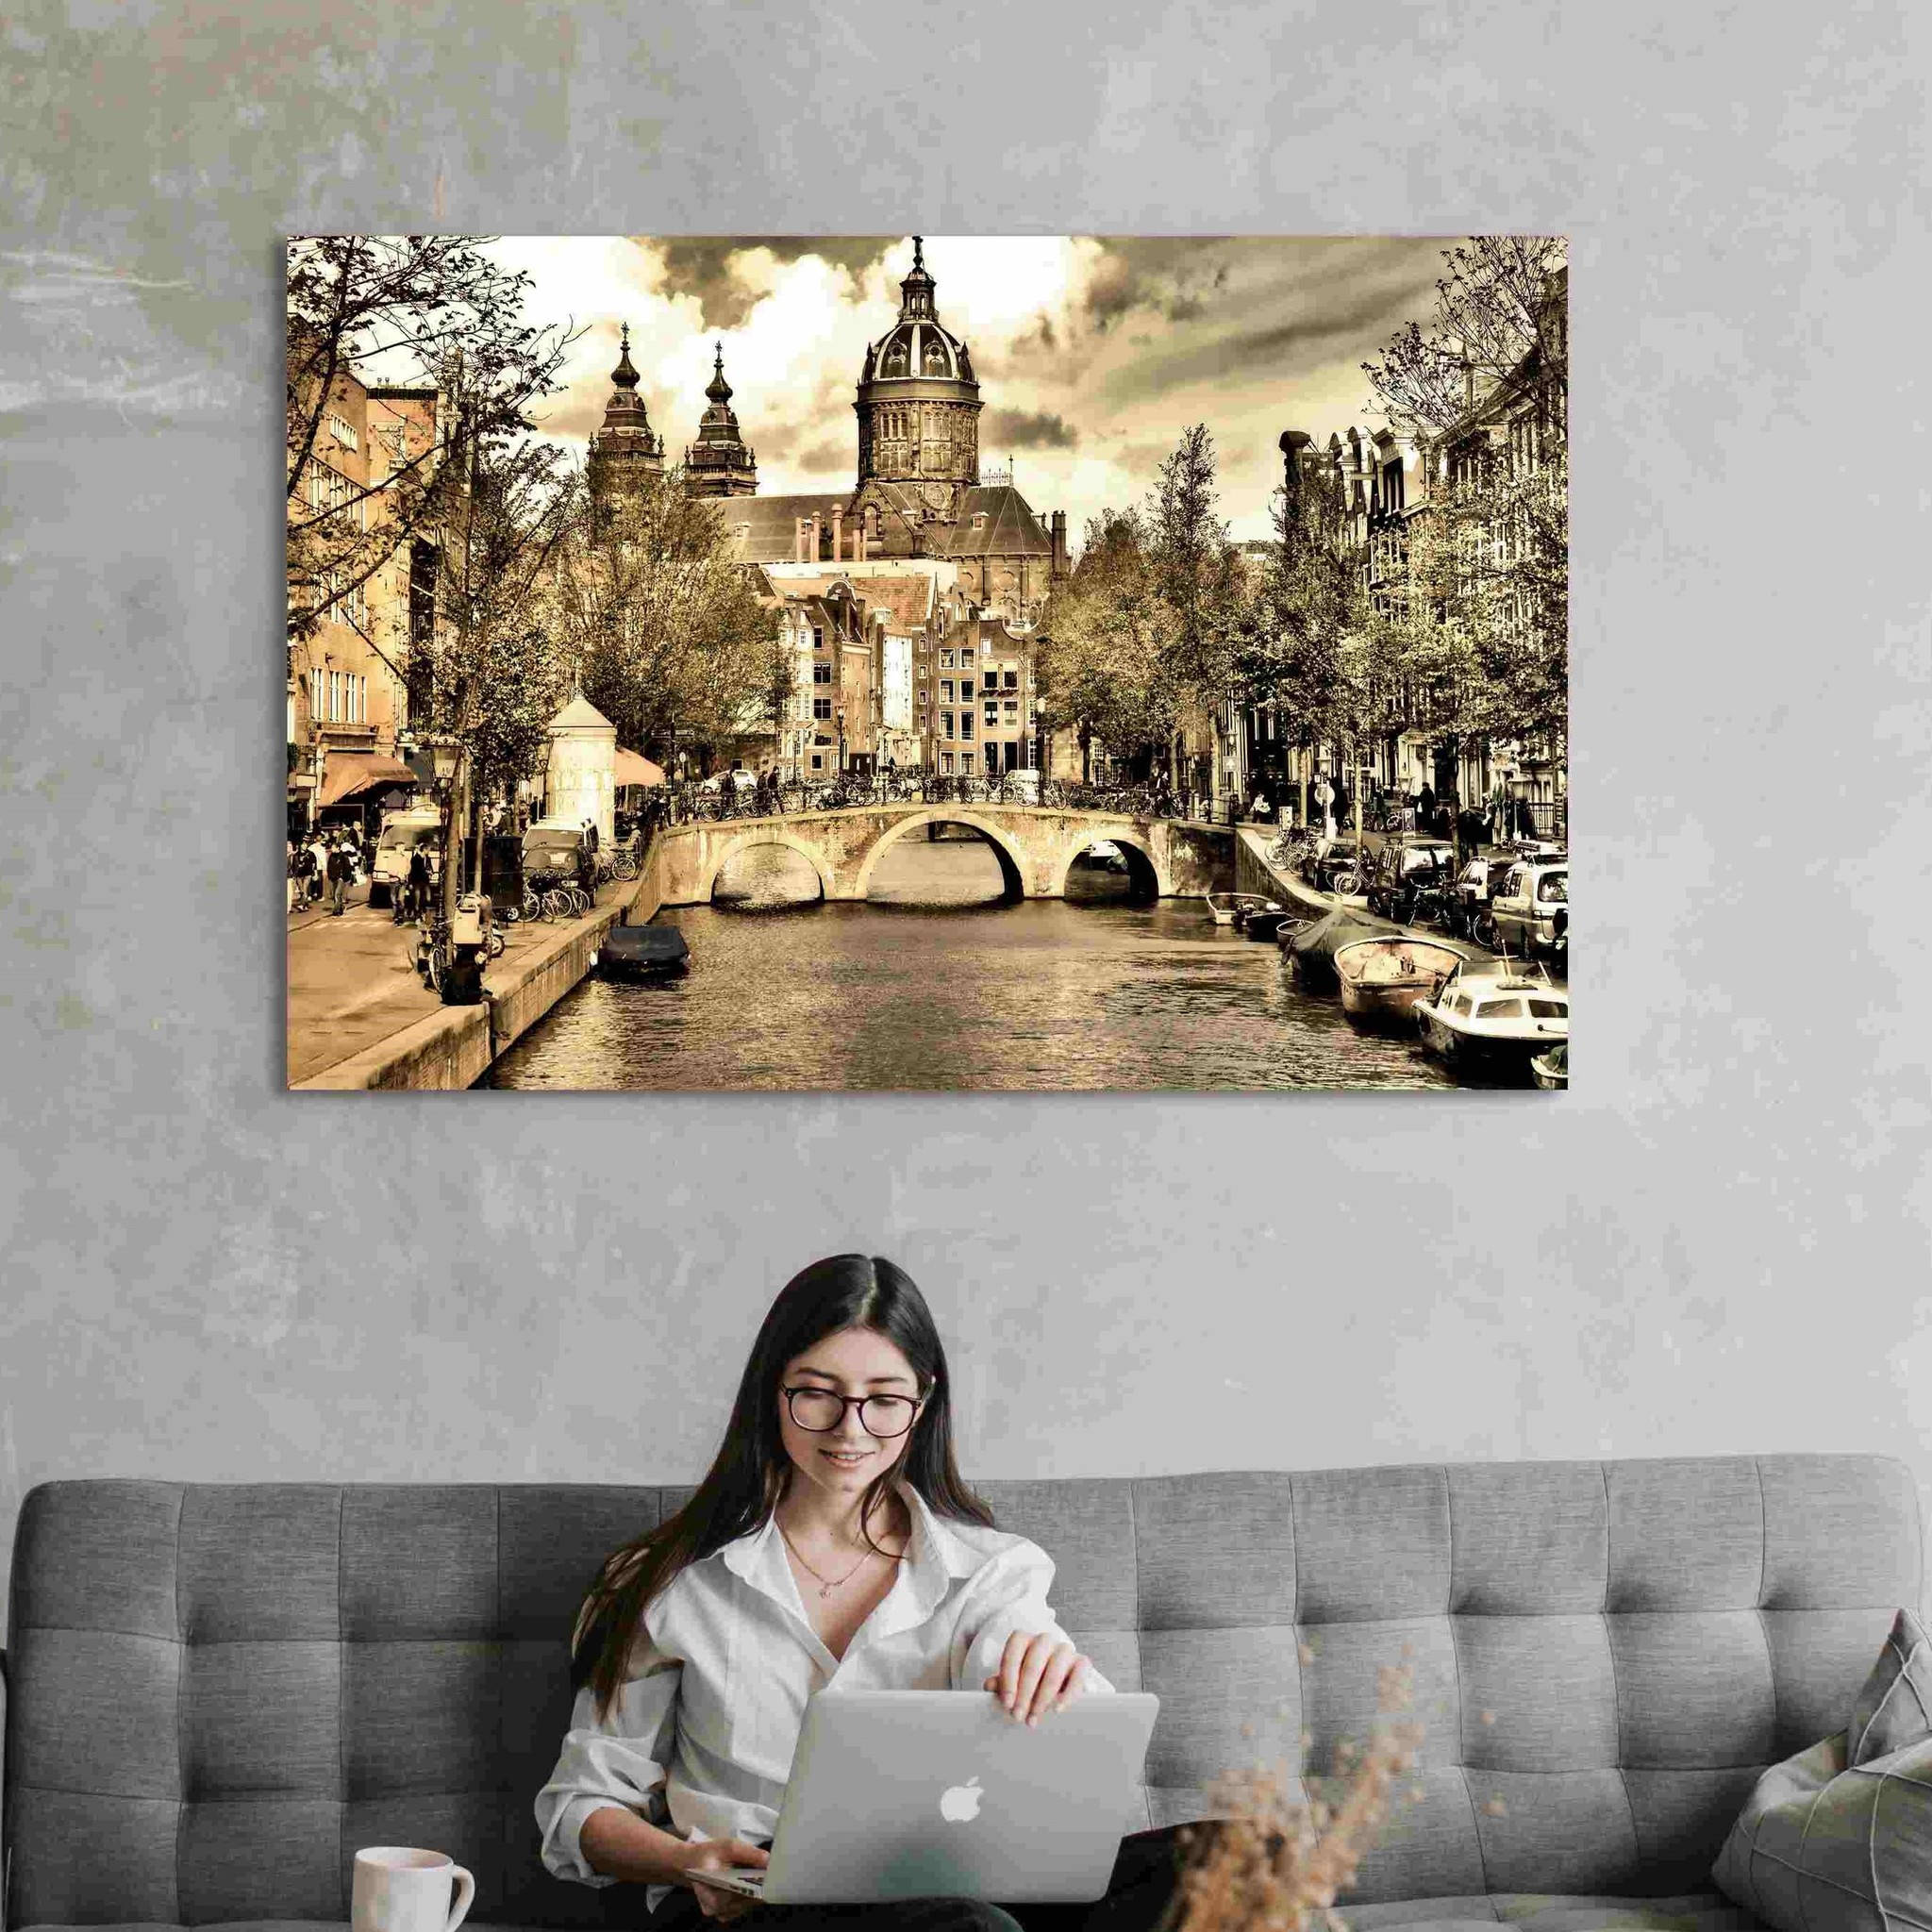 Grand rijk aansporing Plexiglas schilderij met stad | Joy in Living - Joy in Living